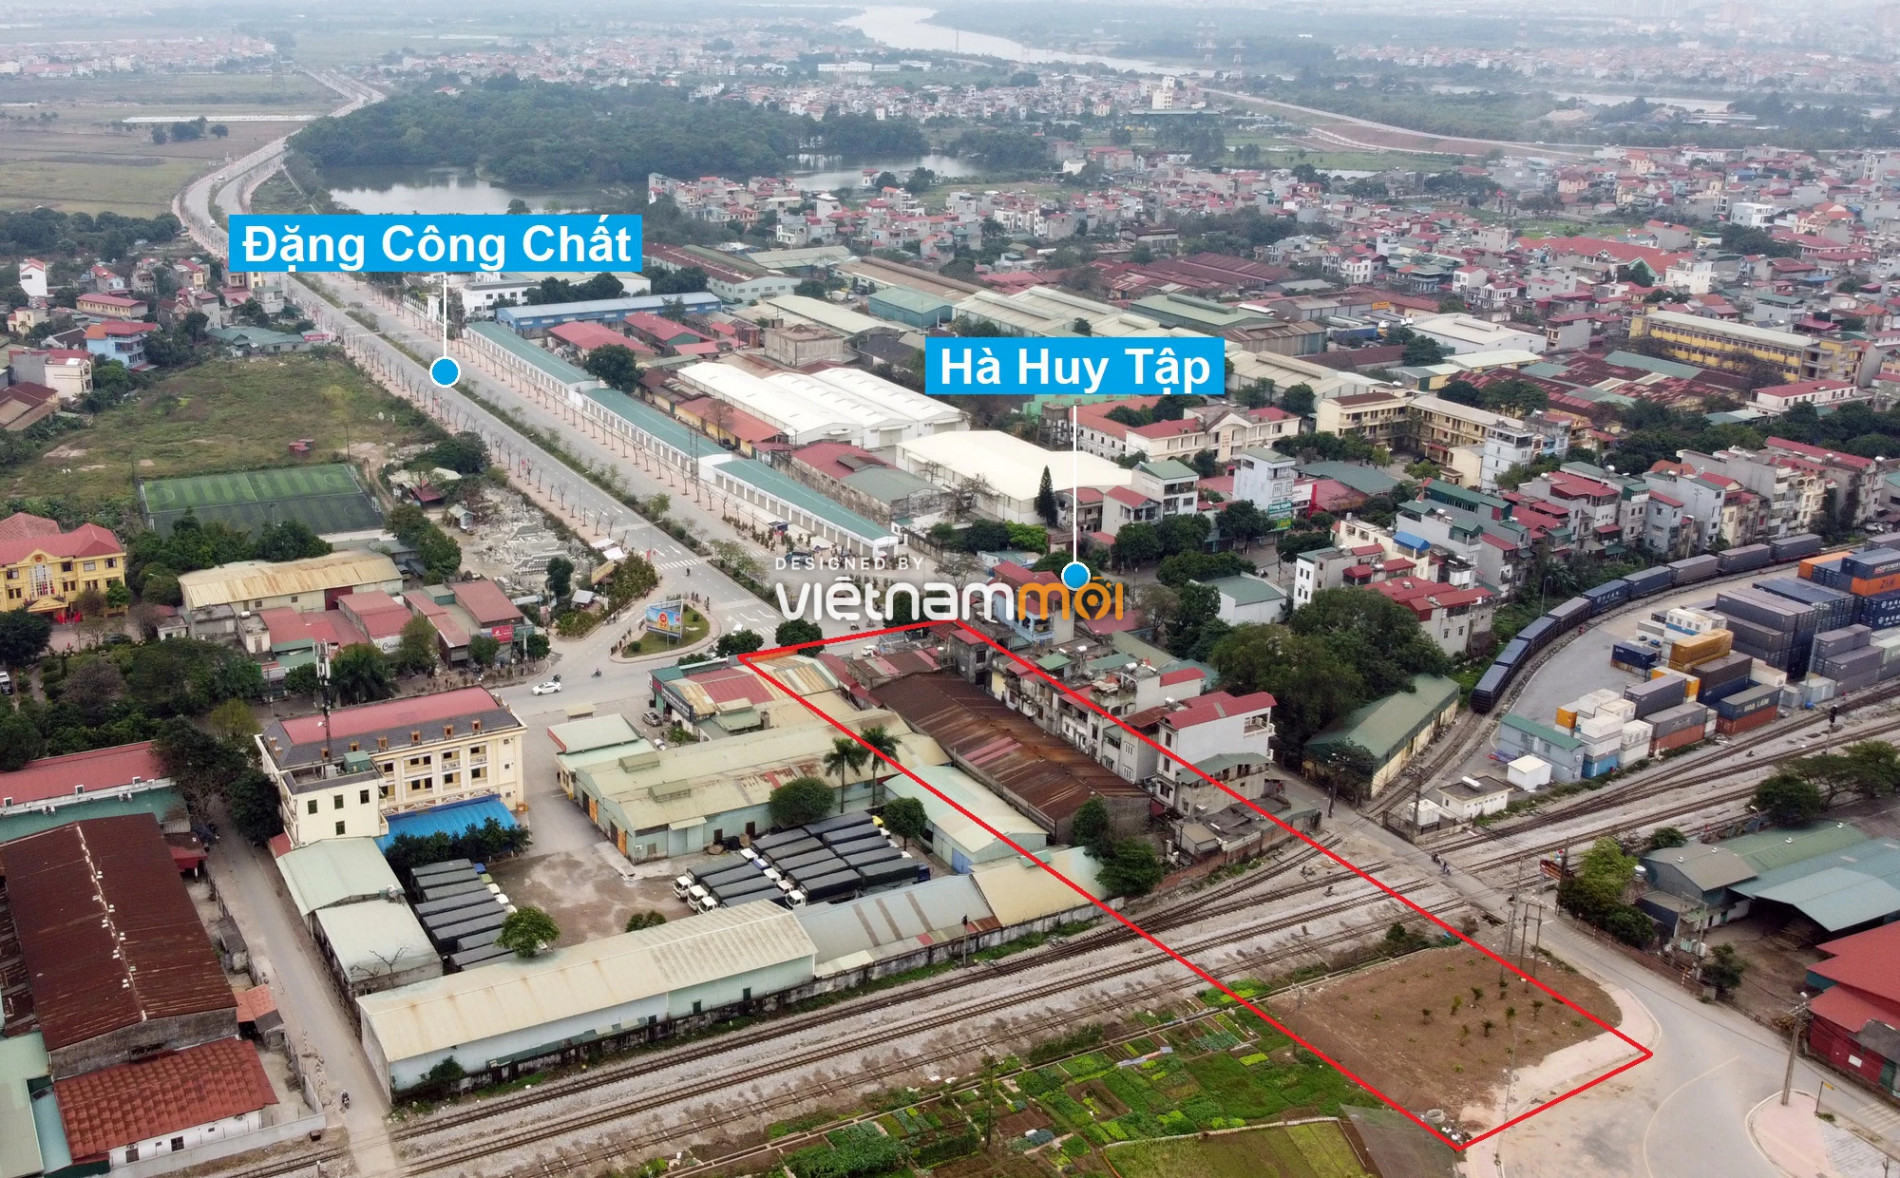 Những khu đất sắp thu hồi để mở đường ở huyện Gia Lâm, Hà Nội (phần 2) - Ảnh 10.